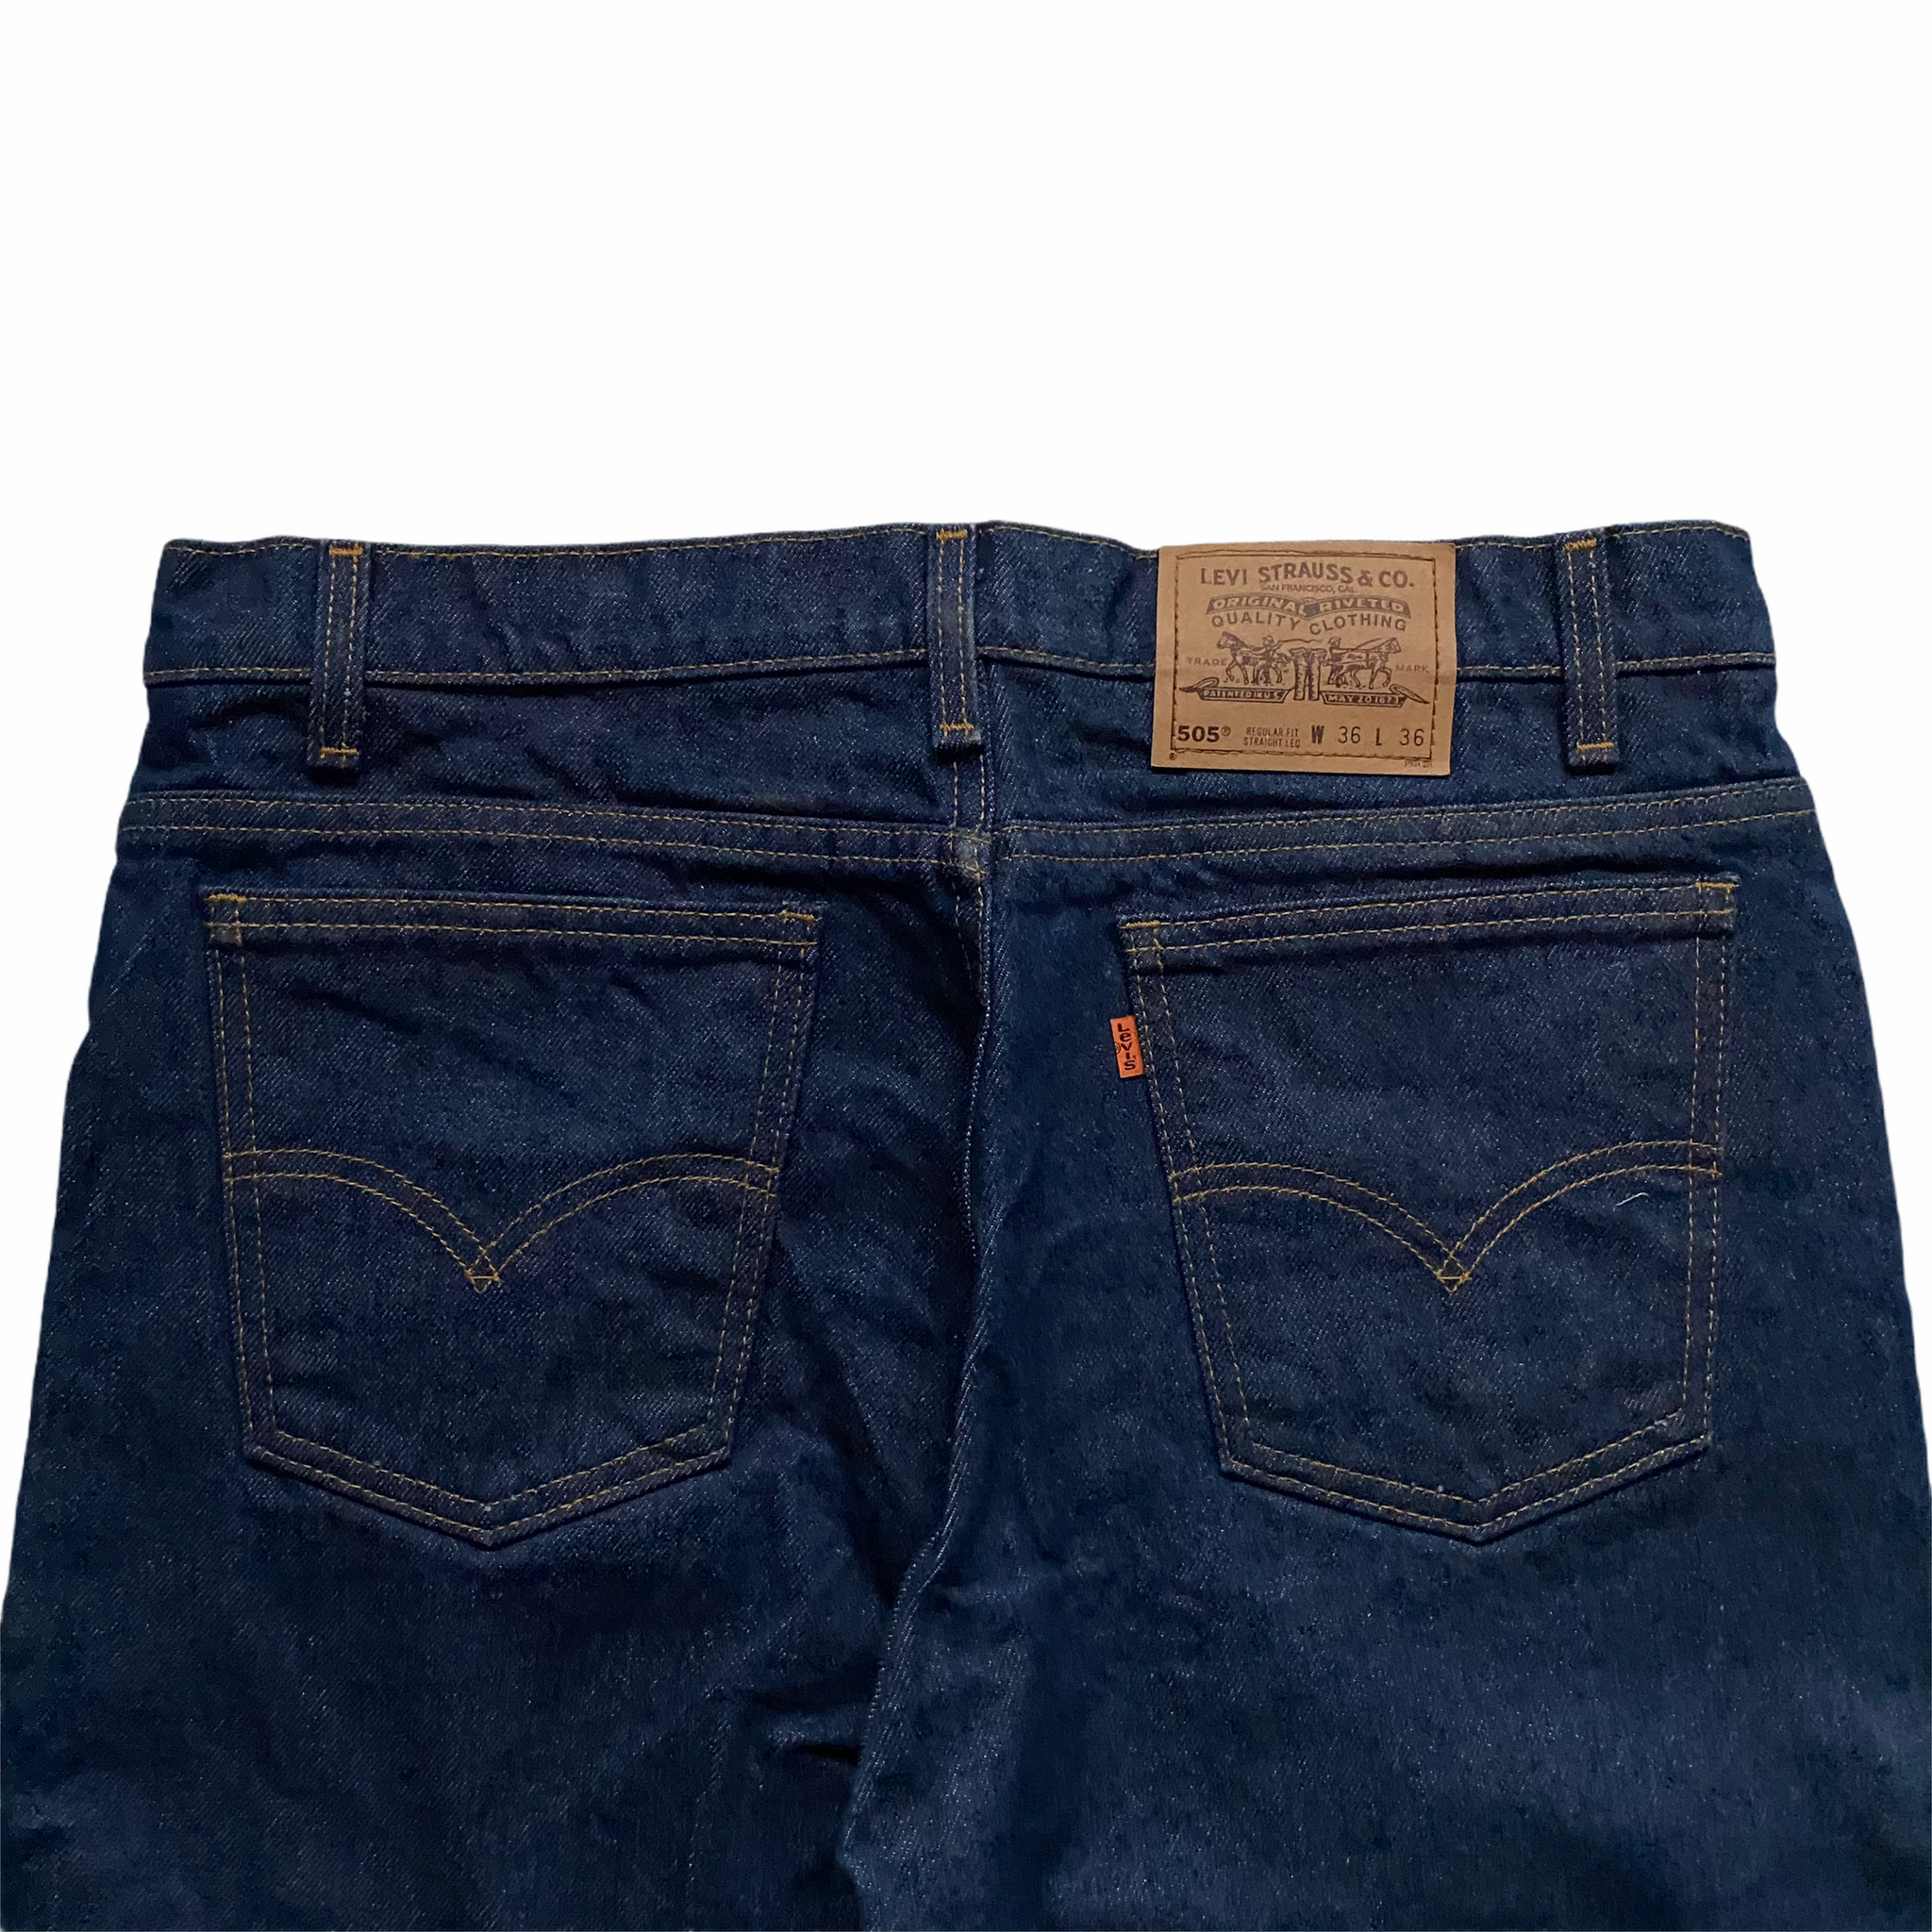 Vintage Levis 505 Orange Tab Made in USA Jeans (Various Sizes) – ROCKHOPPER  VINTAGE